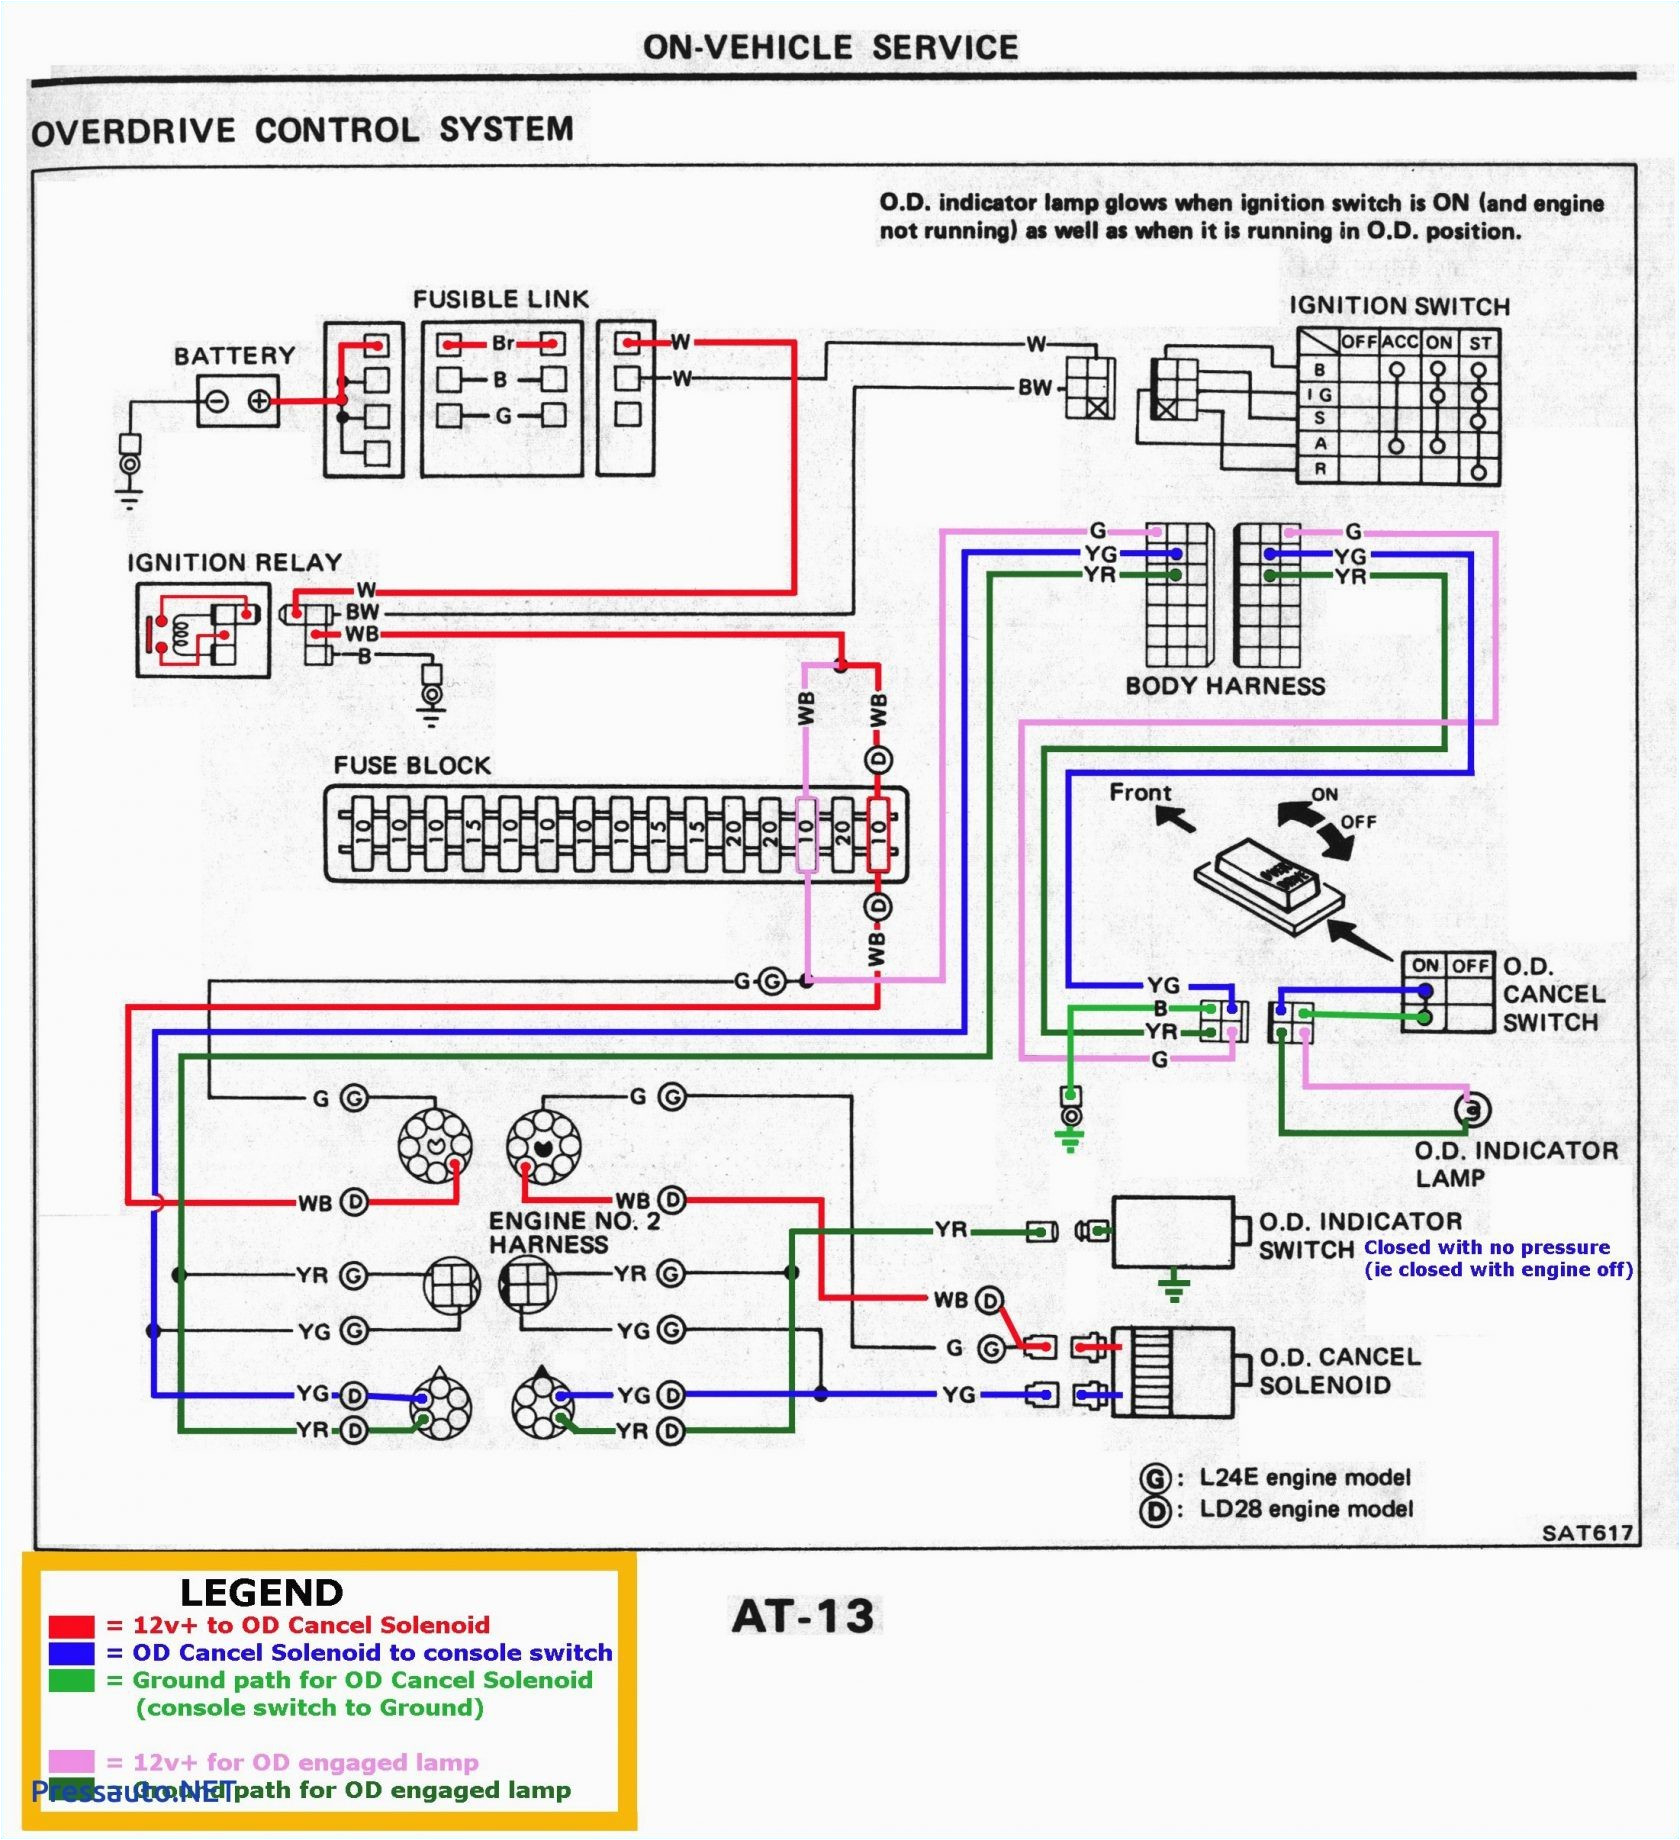 Bmw 318i Radio Wiring Diagram Wiring Diagram Bmw E46 Radio Wiring Diagram Schematic